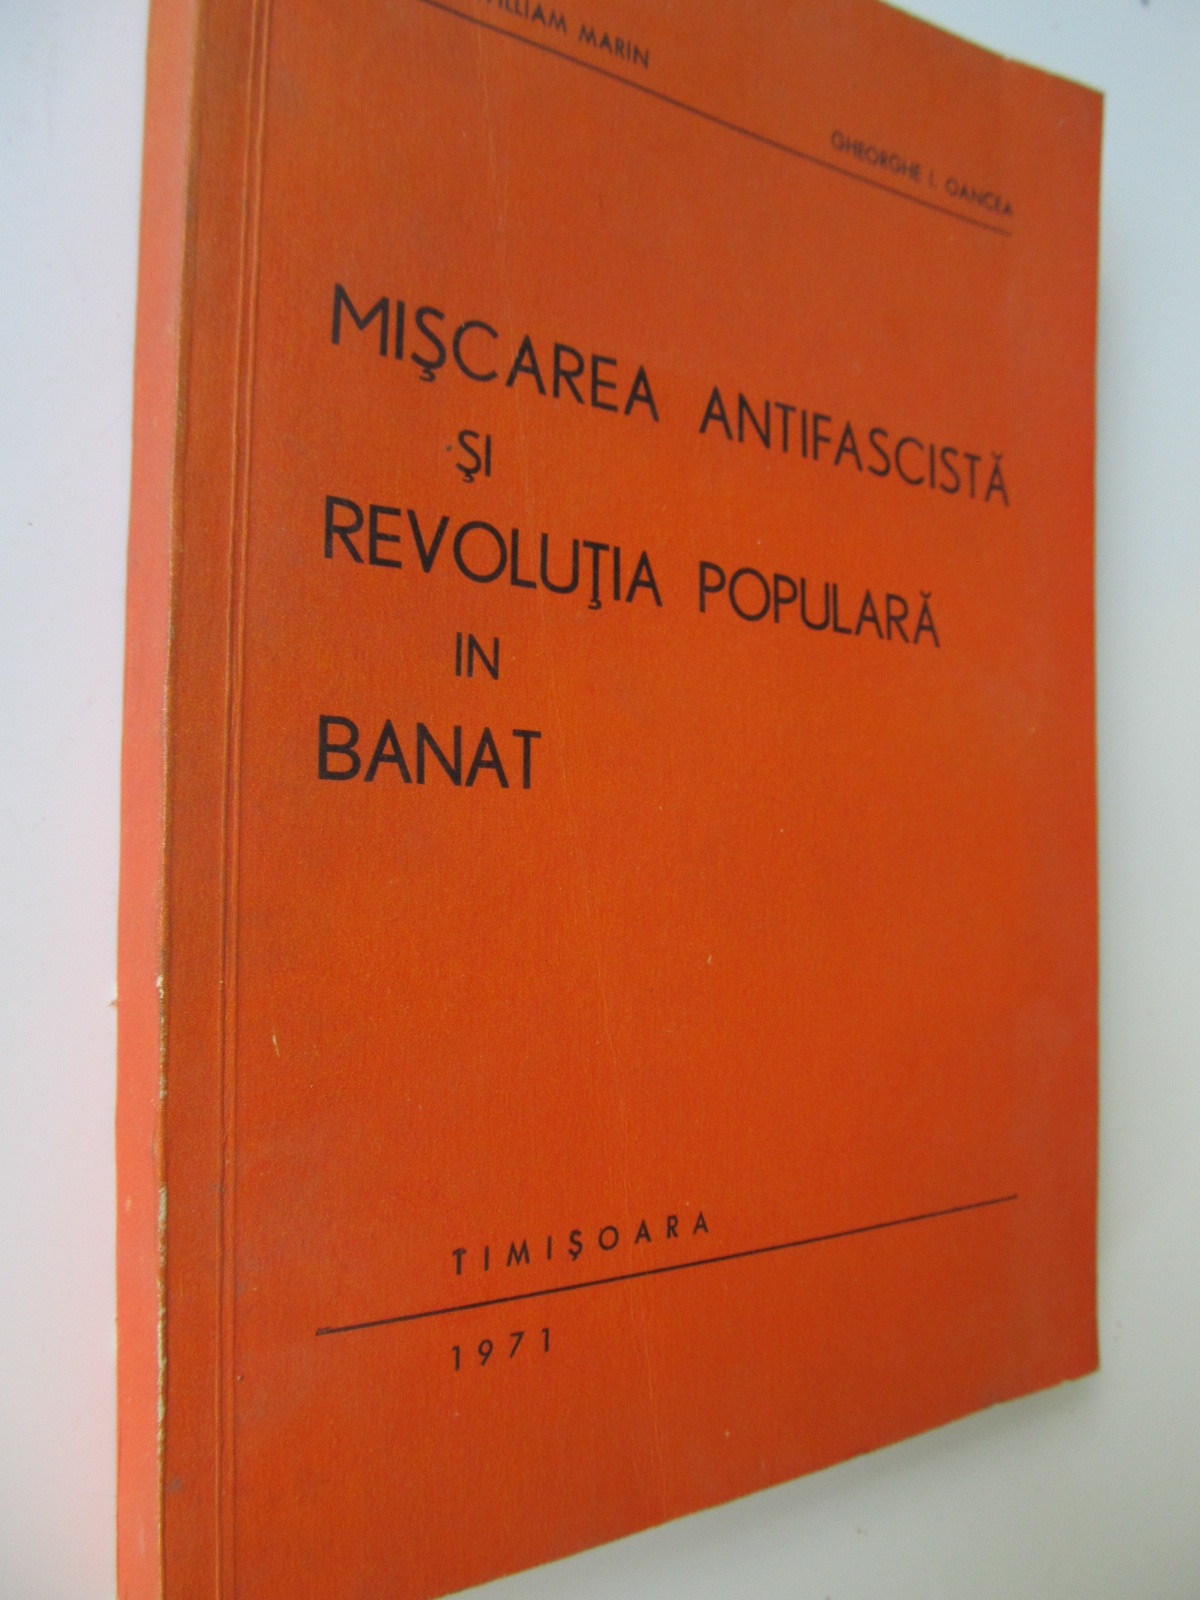 Miscarea antifascista si revolutia populara in Banat - William Marin , Gheorghe I. Oancea | Detalii carte